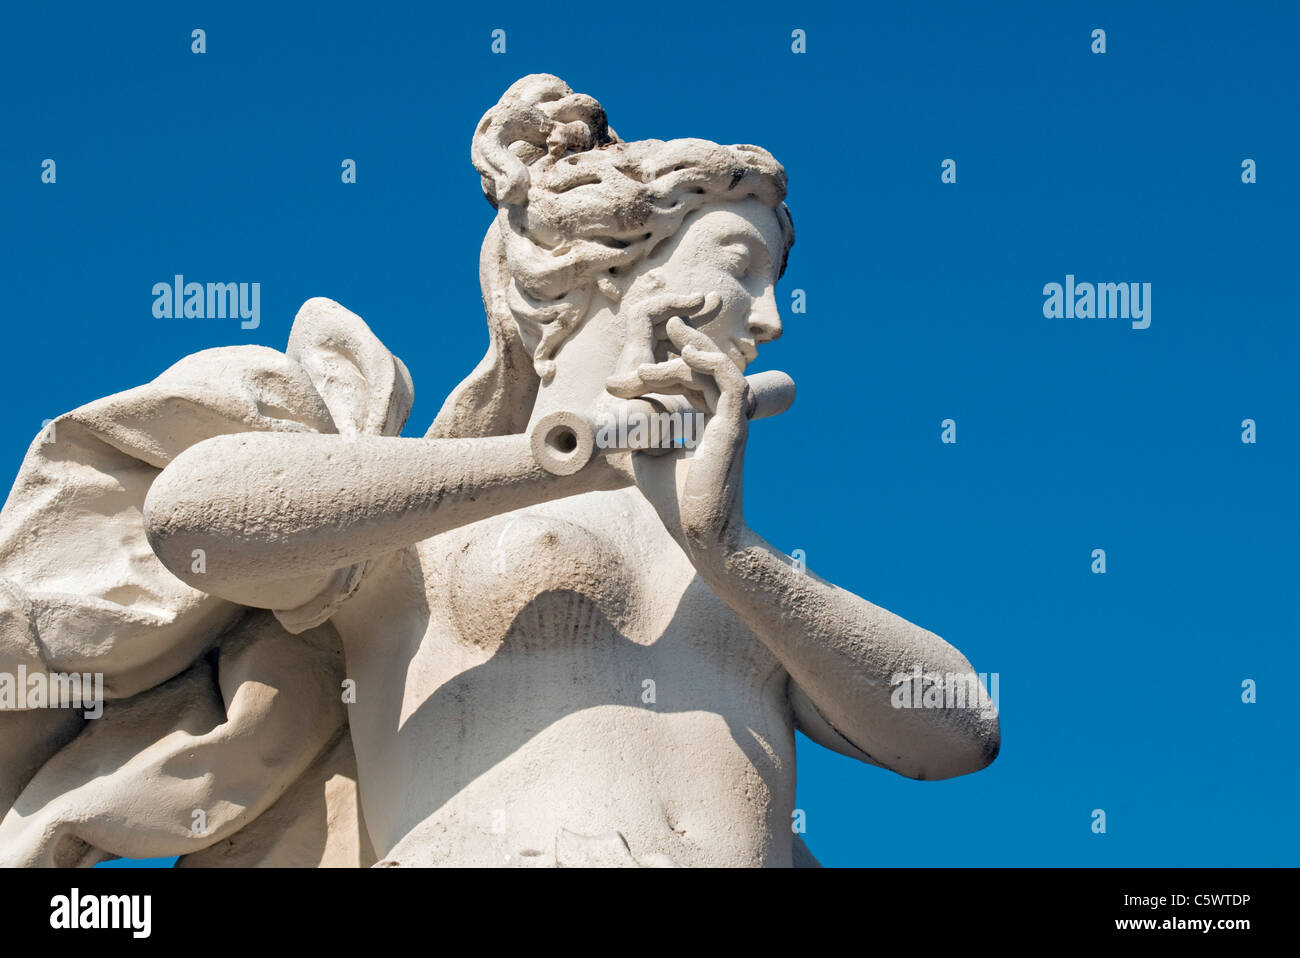 La sculpture baroque de joueur de flûte au Château Belvedere Garden (Belvederegarten), Vienne (Wien, Autriche) Banque D'Images